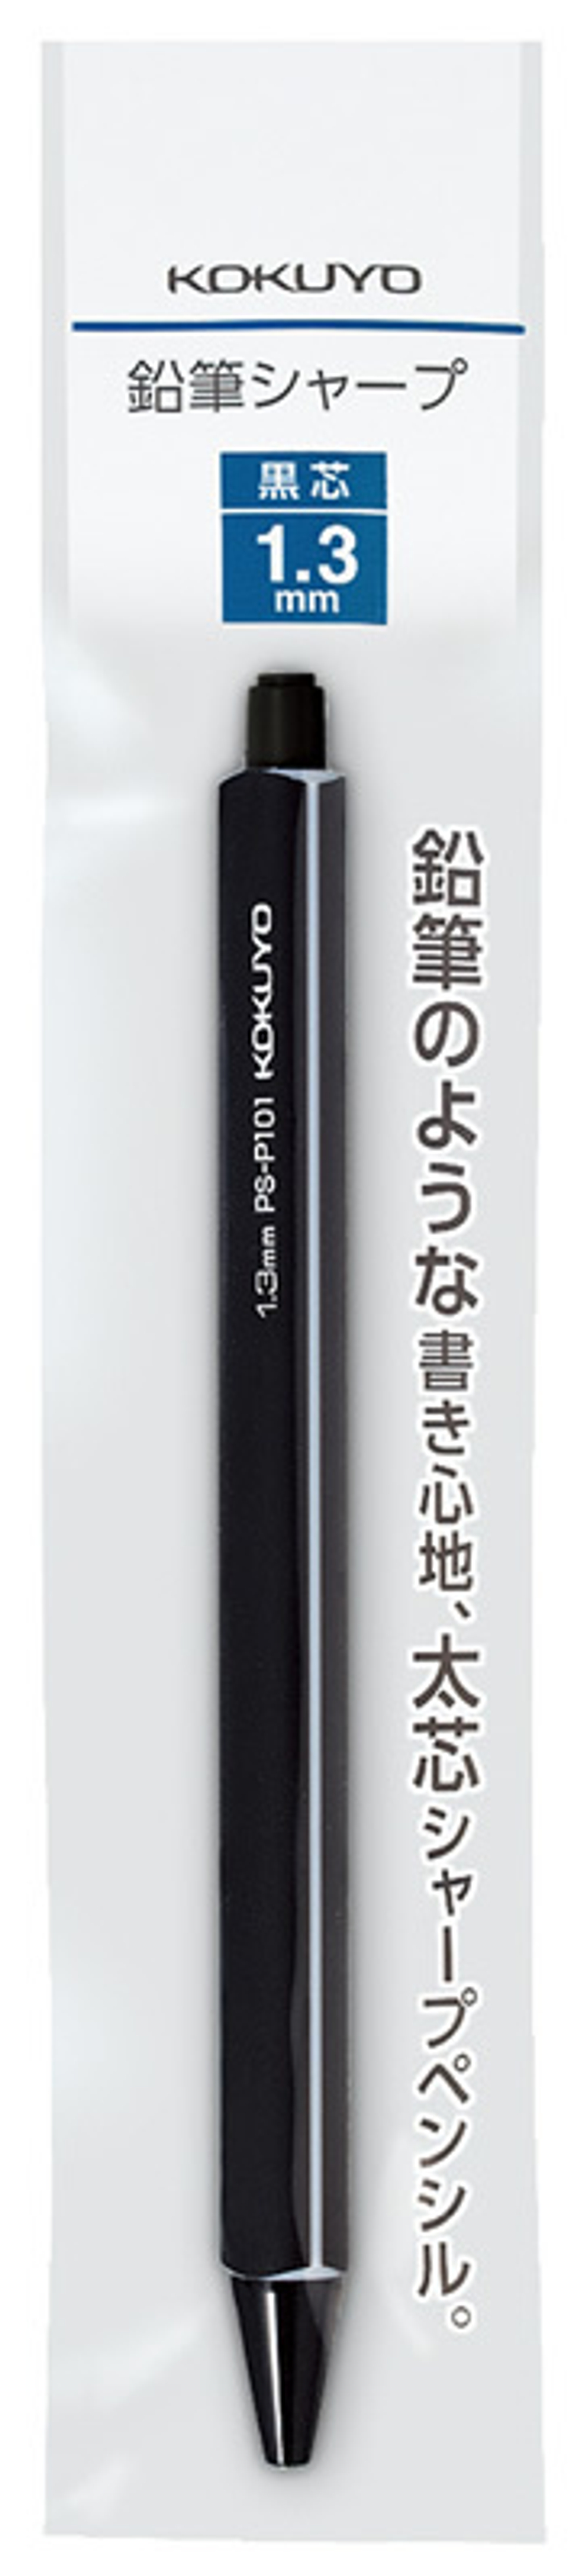 Механический карандаш 1,3 мм Kokuyo Enpitsu Sharp Standard чёрный